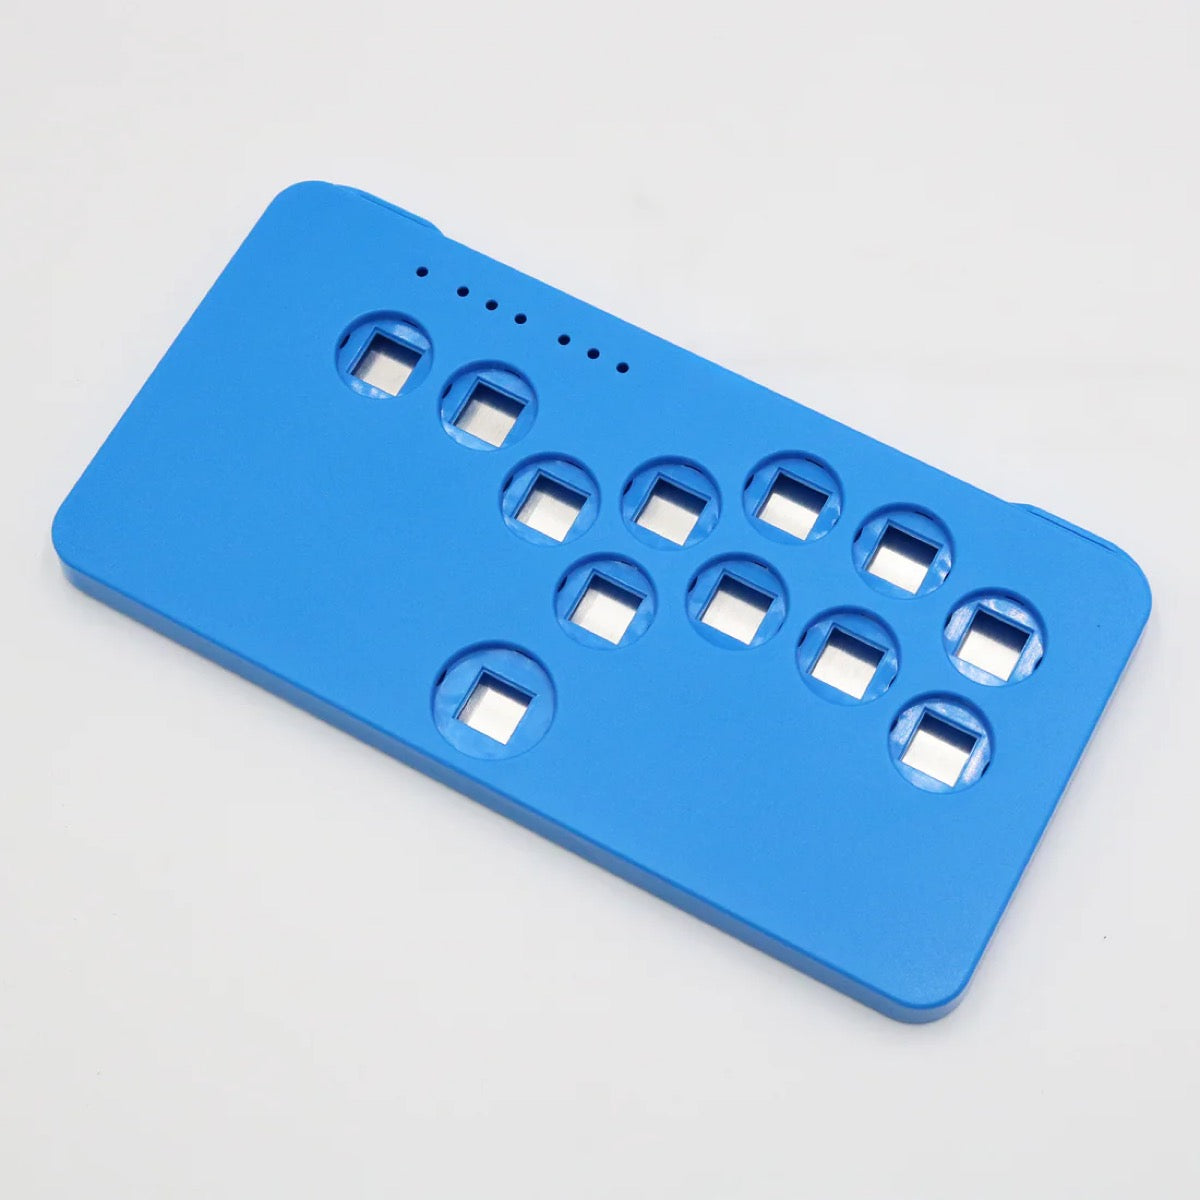 アーケードコントローラー SnackBox MICRO用パーツ 単色ケース スカイブルー